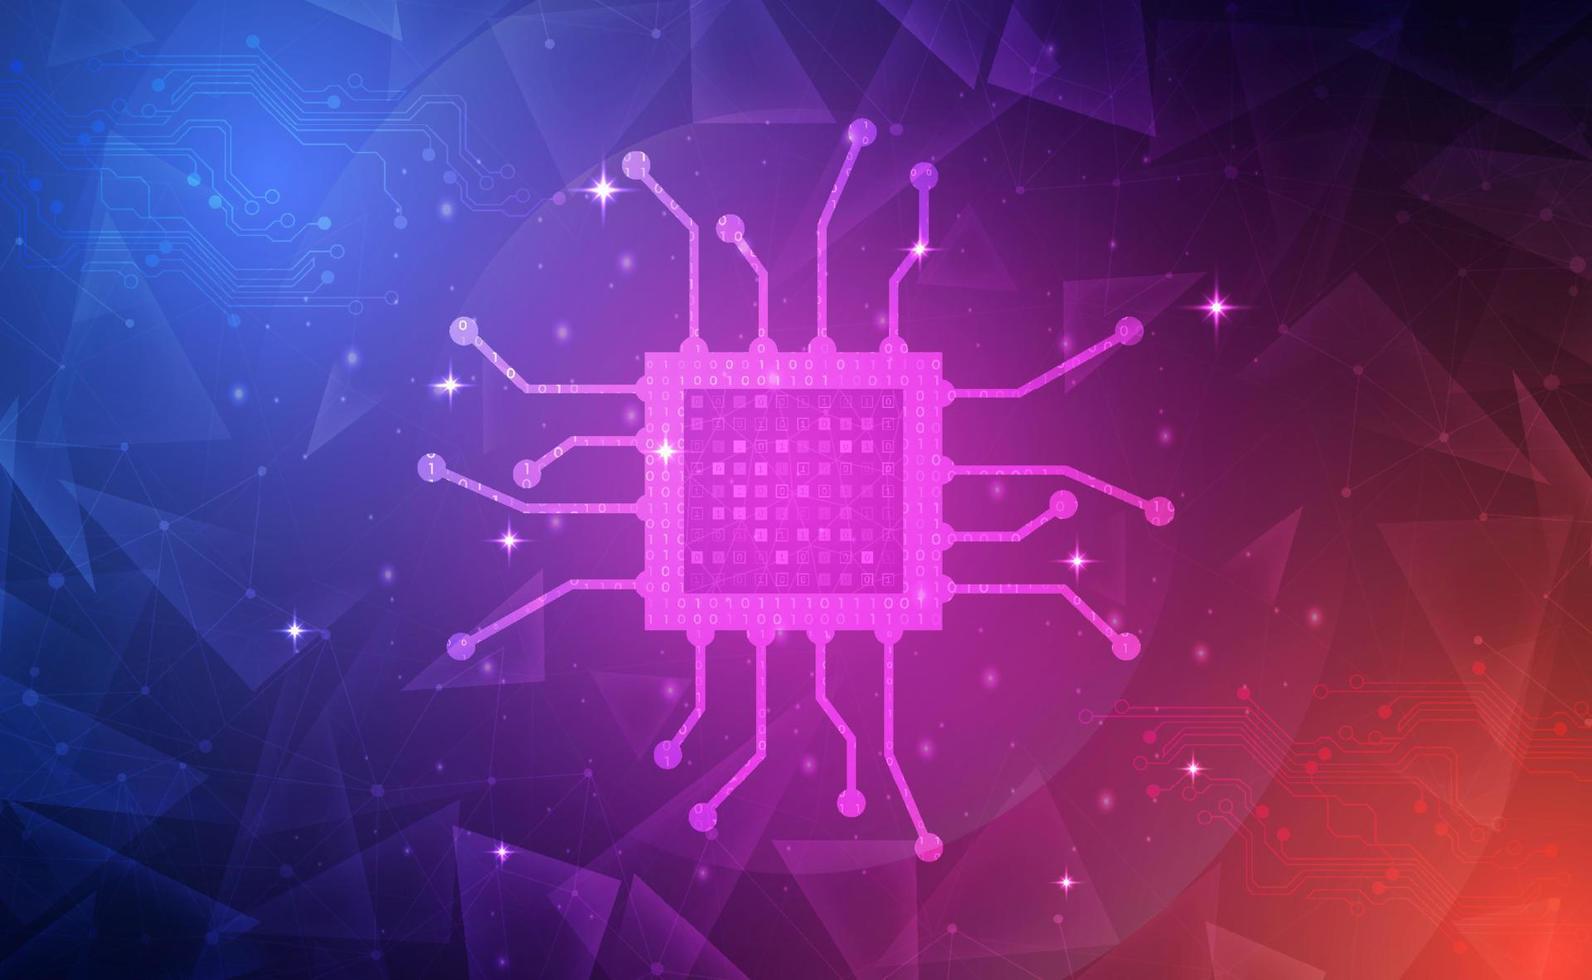 chip eletrônico de tecnologia digital conceito de fundo azul rosa, hardware elétrico de computador microprocessador de memória ram cpu, futuro cibernético futurista, tecnologia de rede de big data abstrata, ilustração vetorial vetor